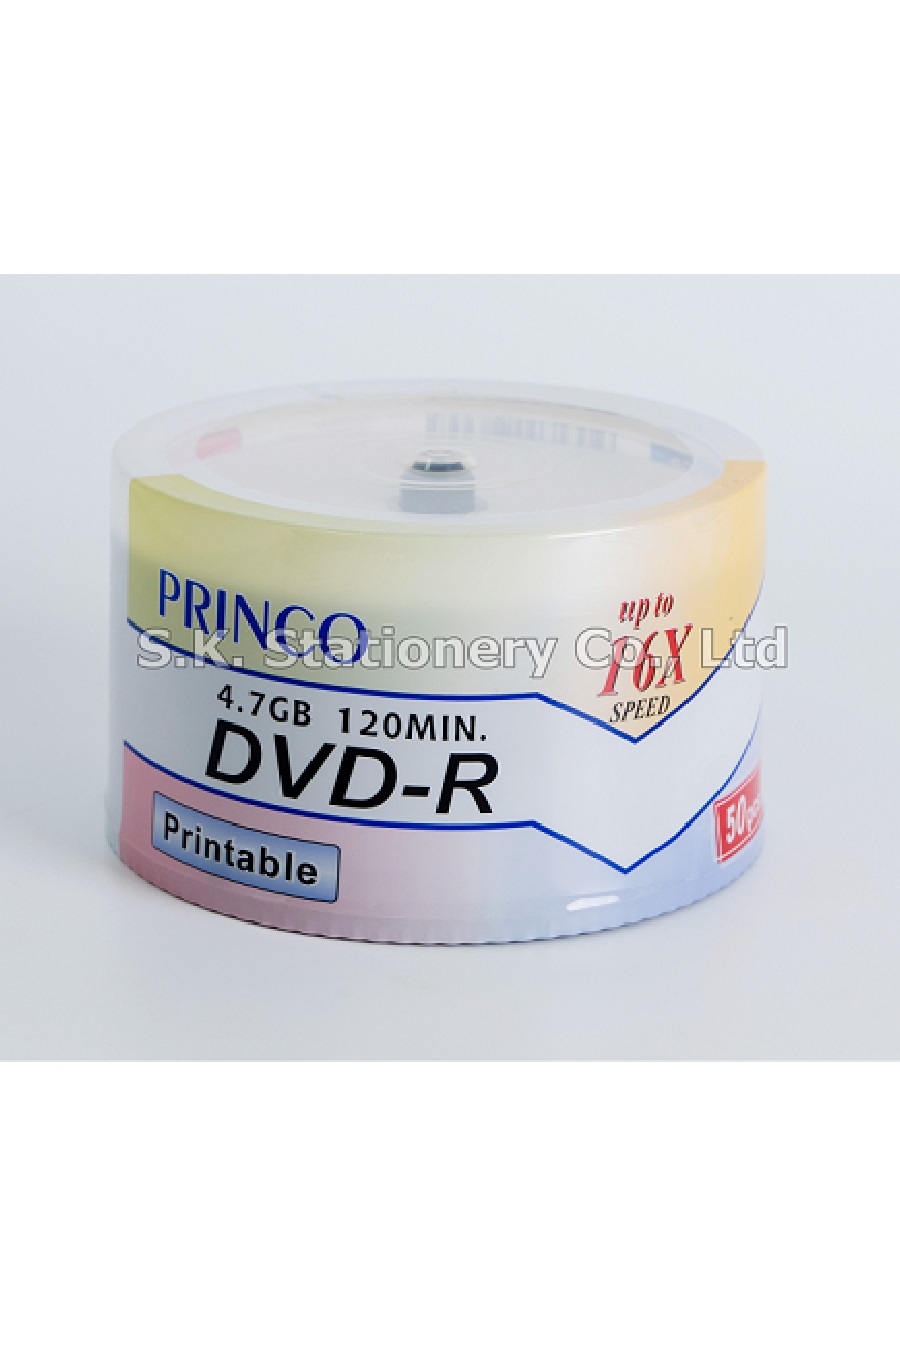 DVD PRINCO ปริ้นปก